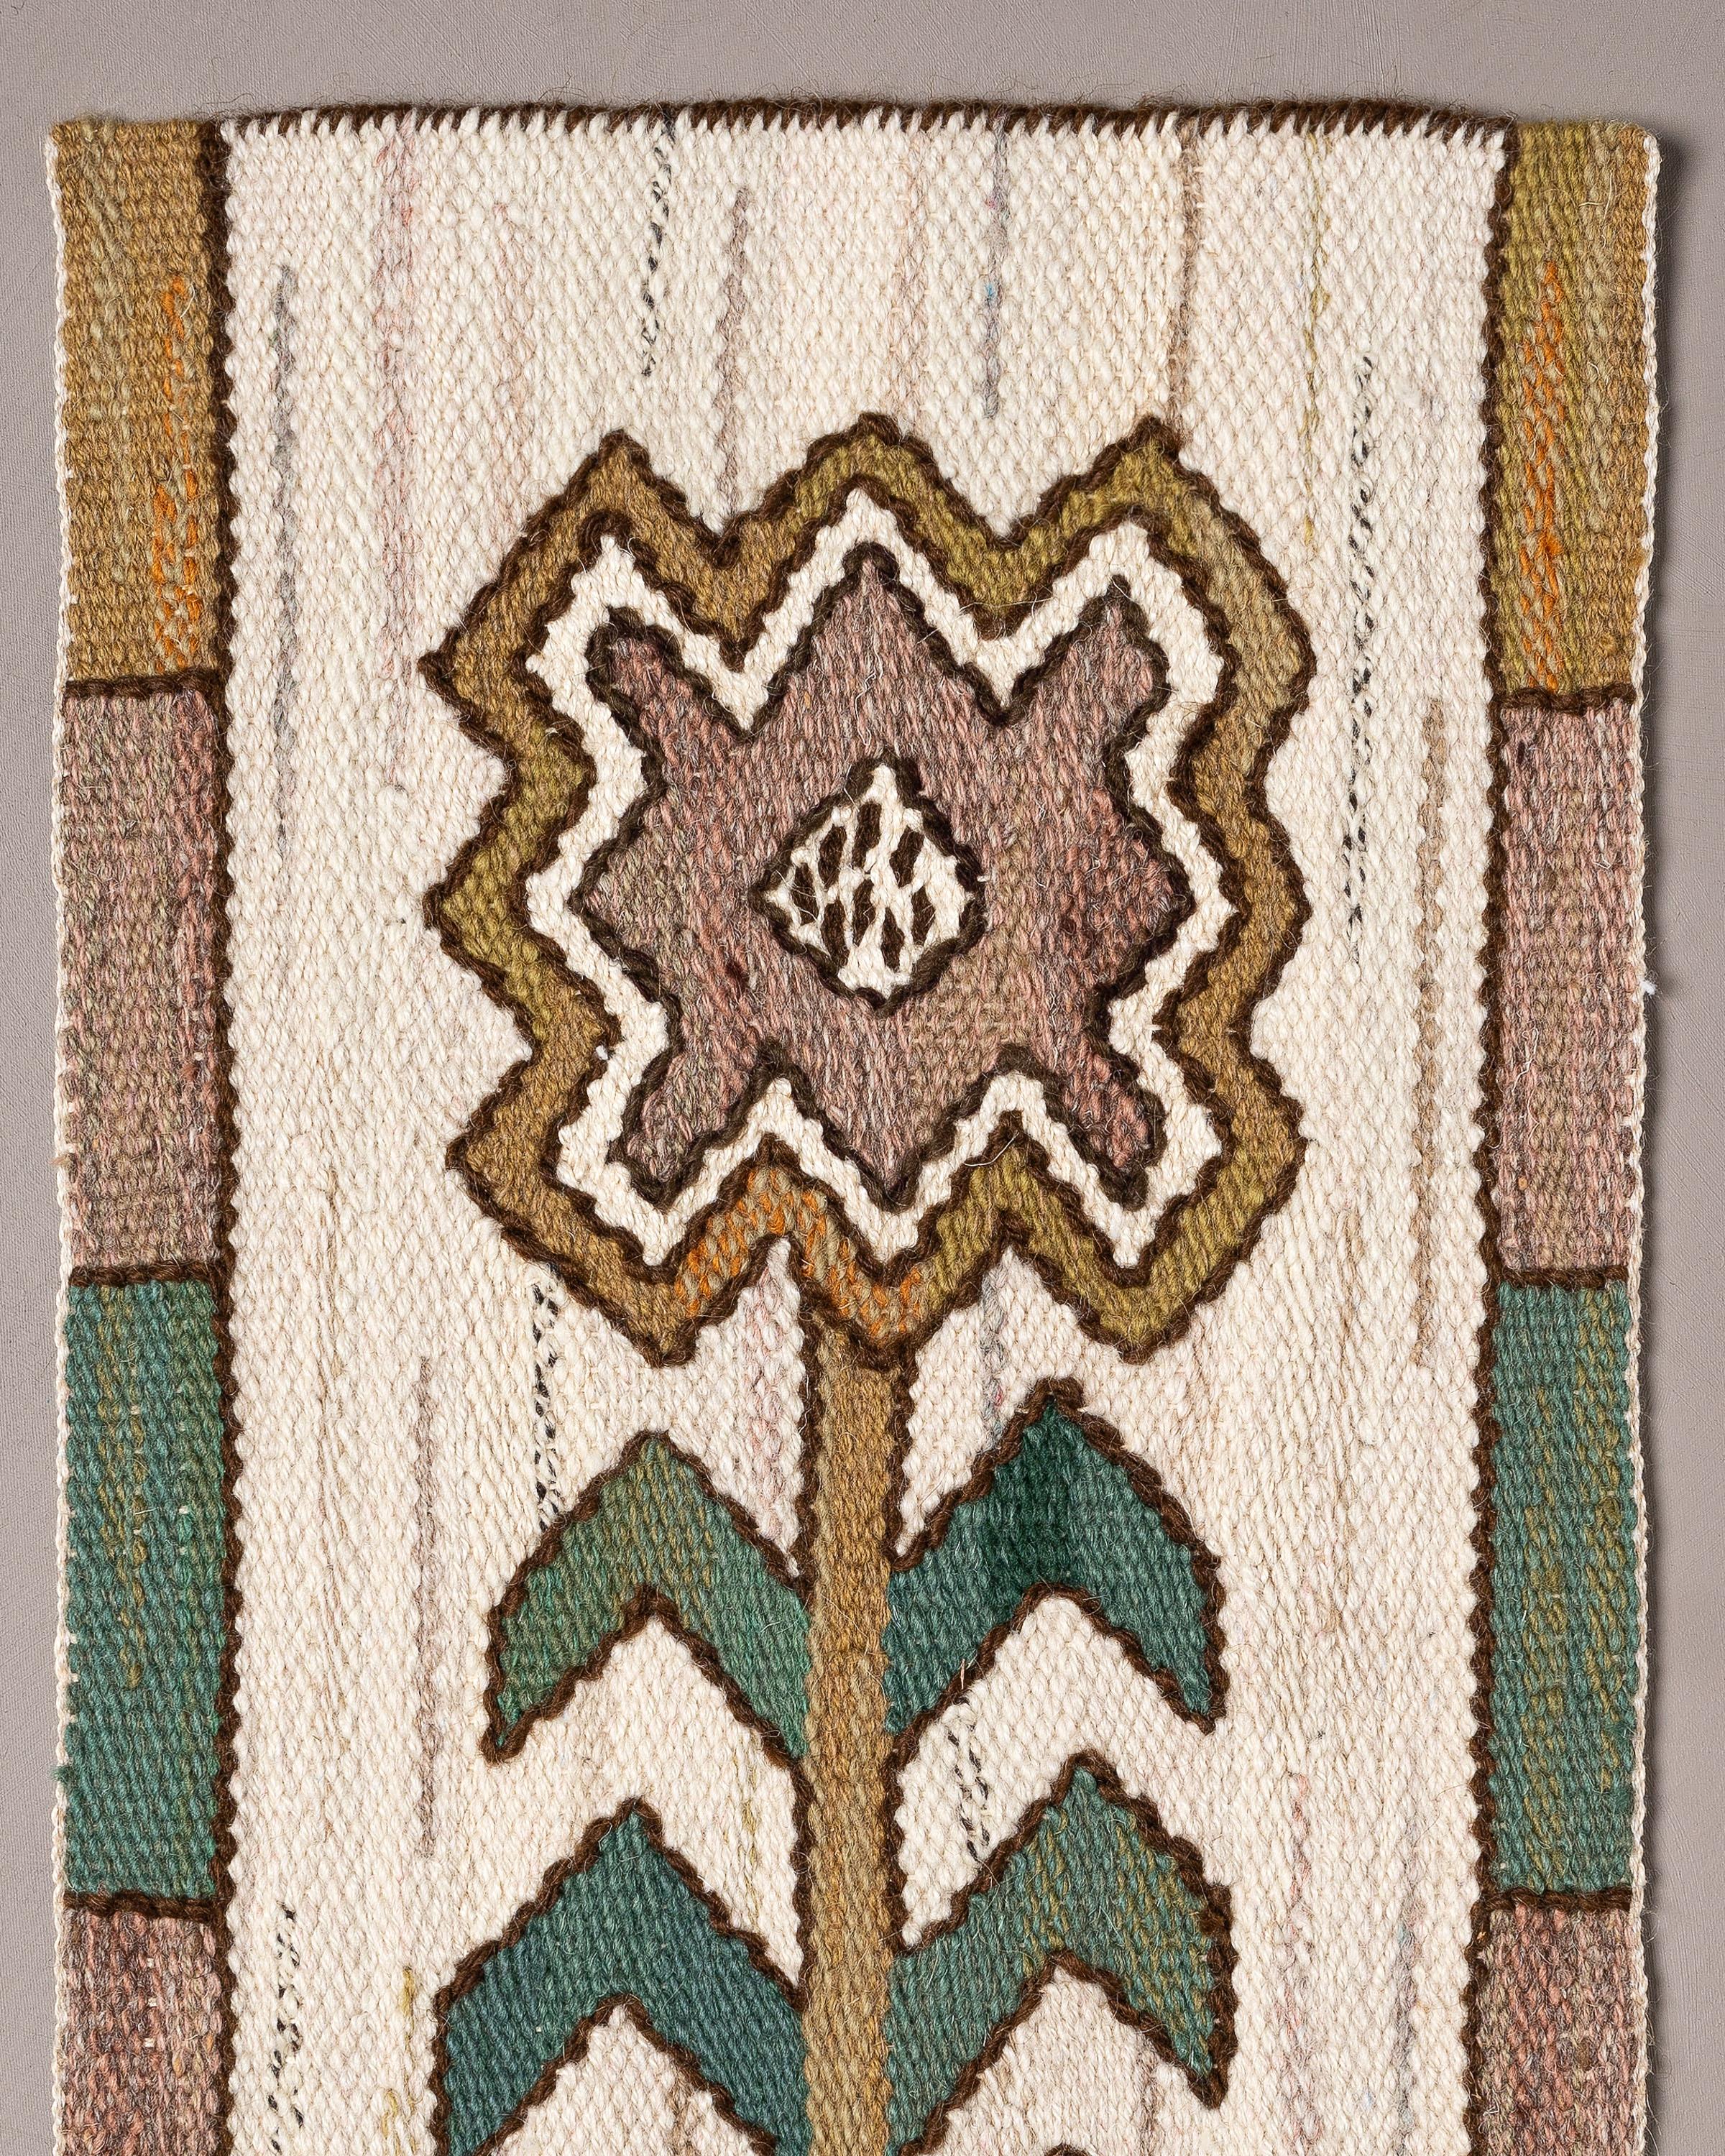 Handgewebter Wandteppich aus Wolle mit einer Lilie, entworfen von Märta Måås-Fjetterström im Jahr 1929. Detail aus dem Wandteppich Sländorna von MMF. 

Gewebt aus Wolle auf einer Wollkette von der Kunstweberin Margareta Westdahl im Jahr 2008 im